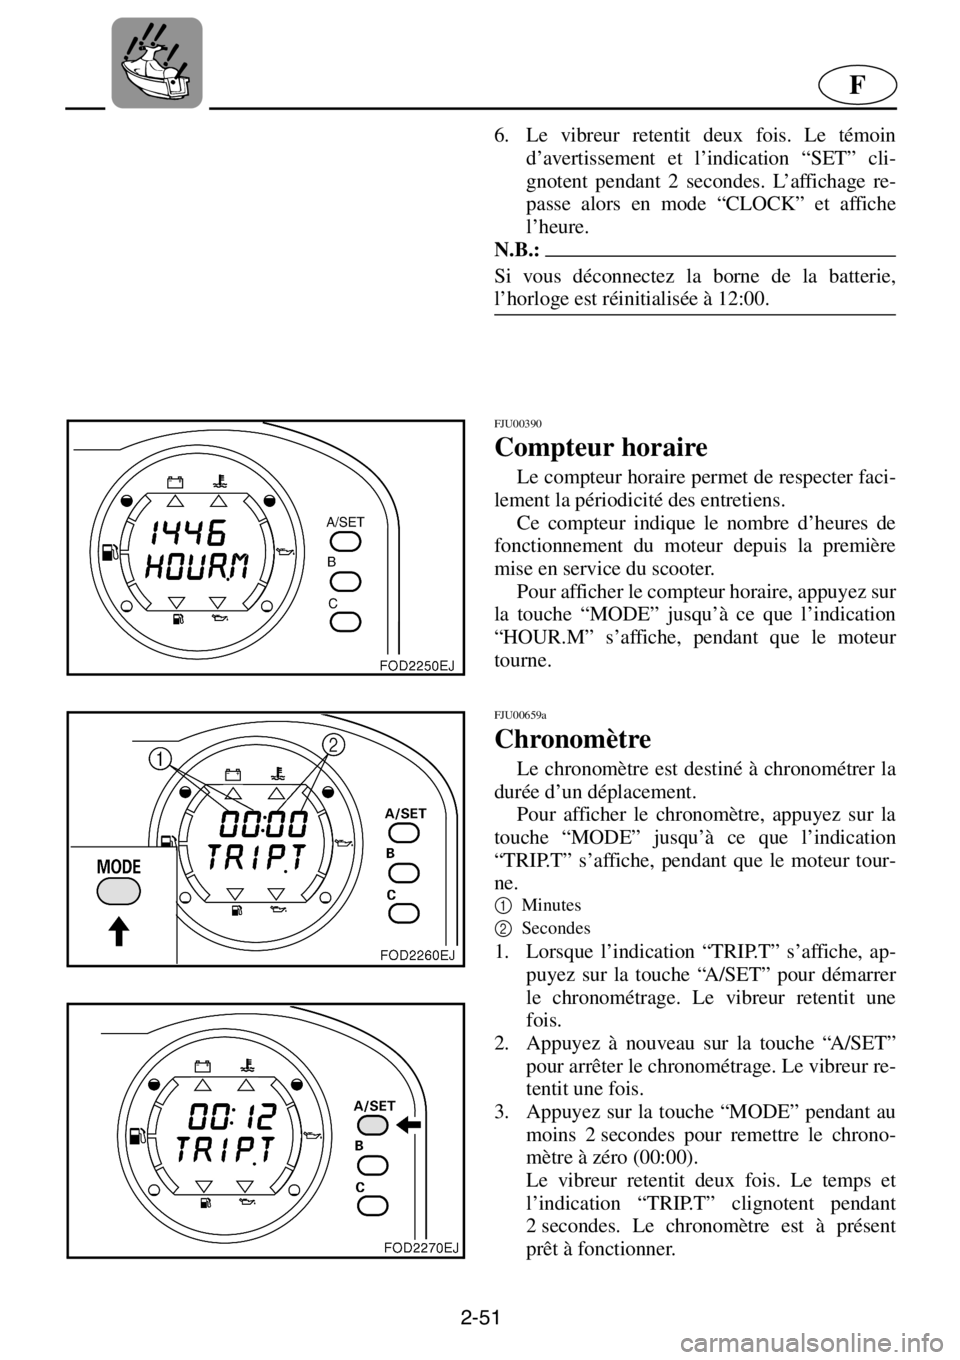 YAMAHA XL 1200 2001  Manuale de Empleo (in Spanish) 2-51
F
6. Le vibreur retentit deux fois. Le témoin
d’avertissement et l’indication “SET” cli-
gnotent pendant 2 secondes. L’affichage re-
passe alors en mode “CLOCK” et affiche
l’heur